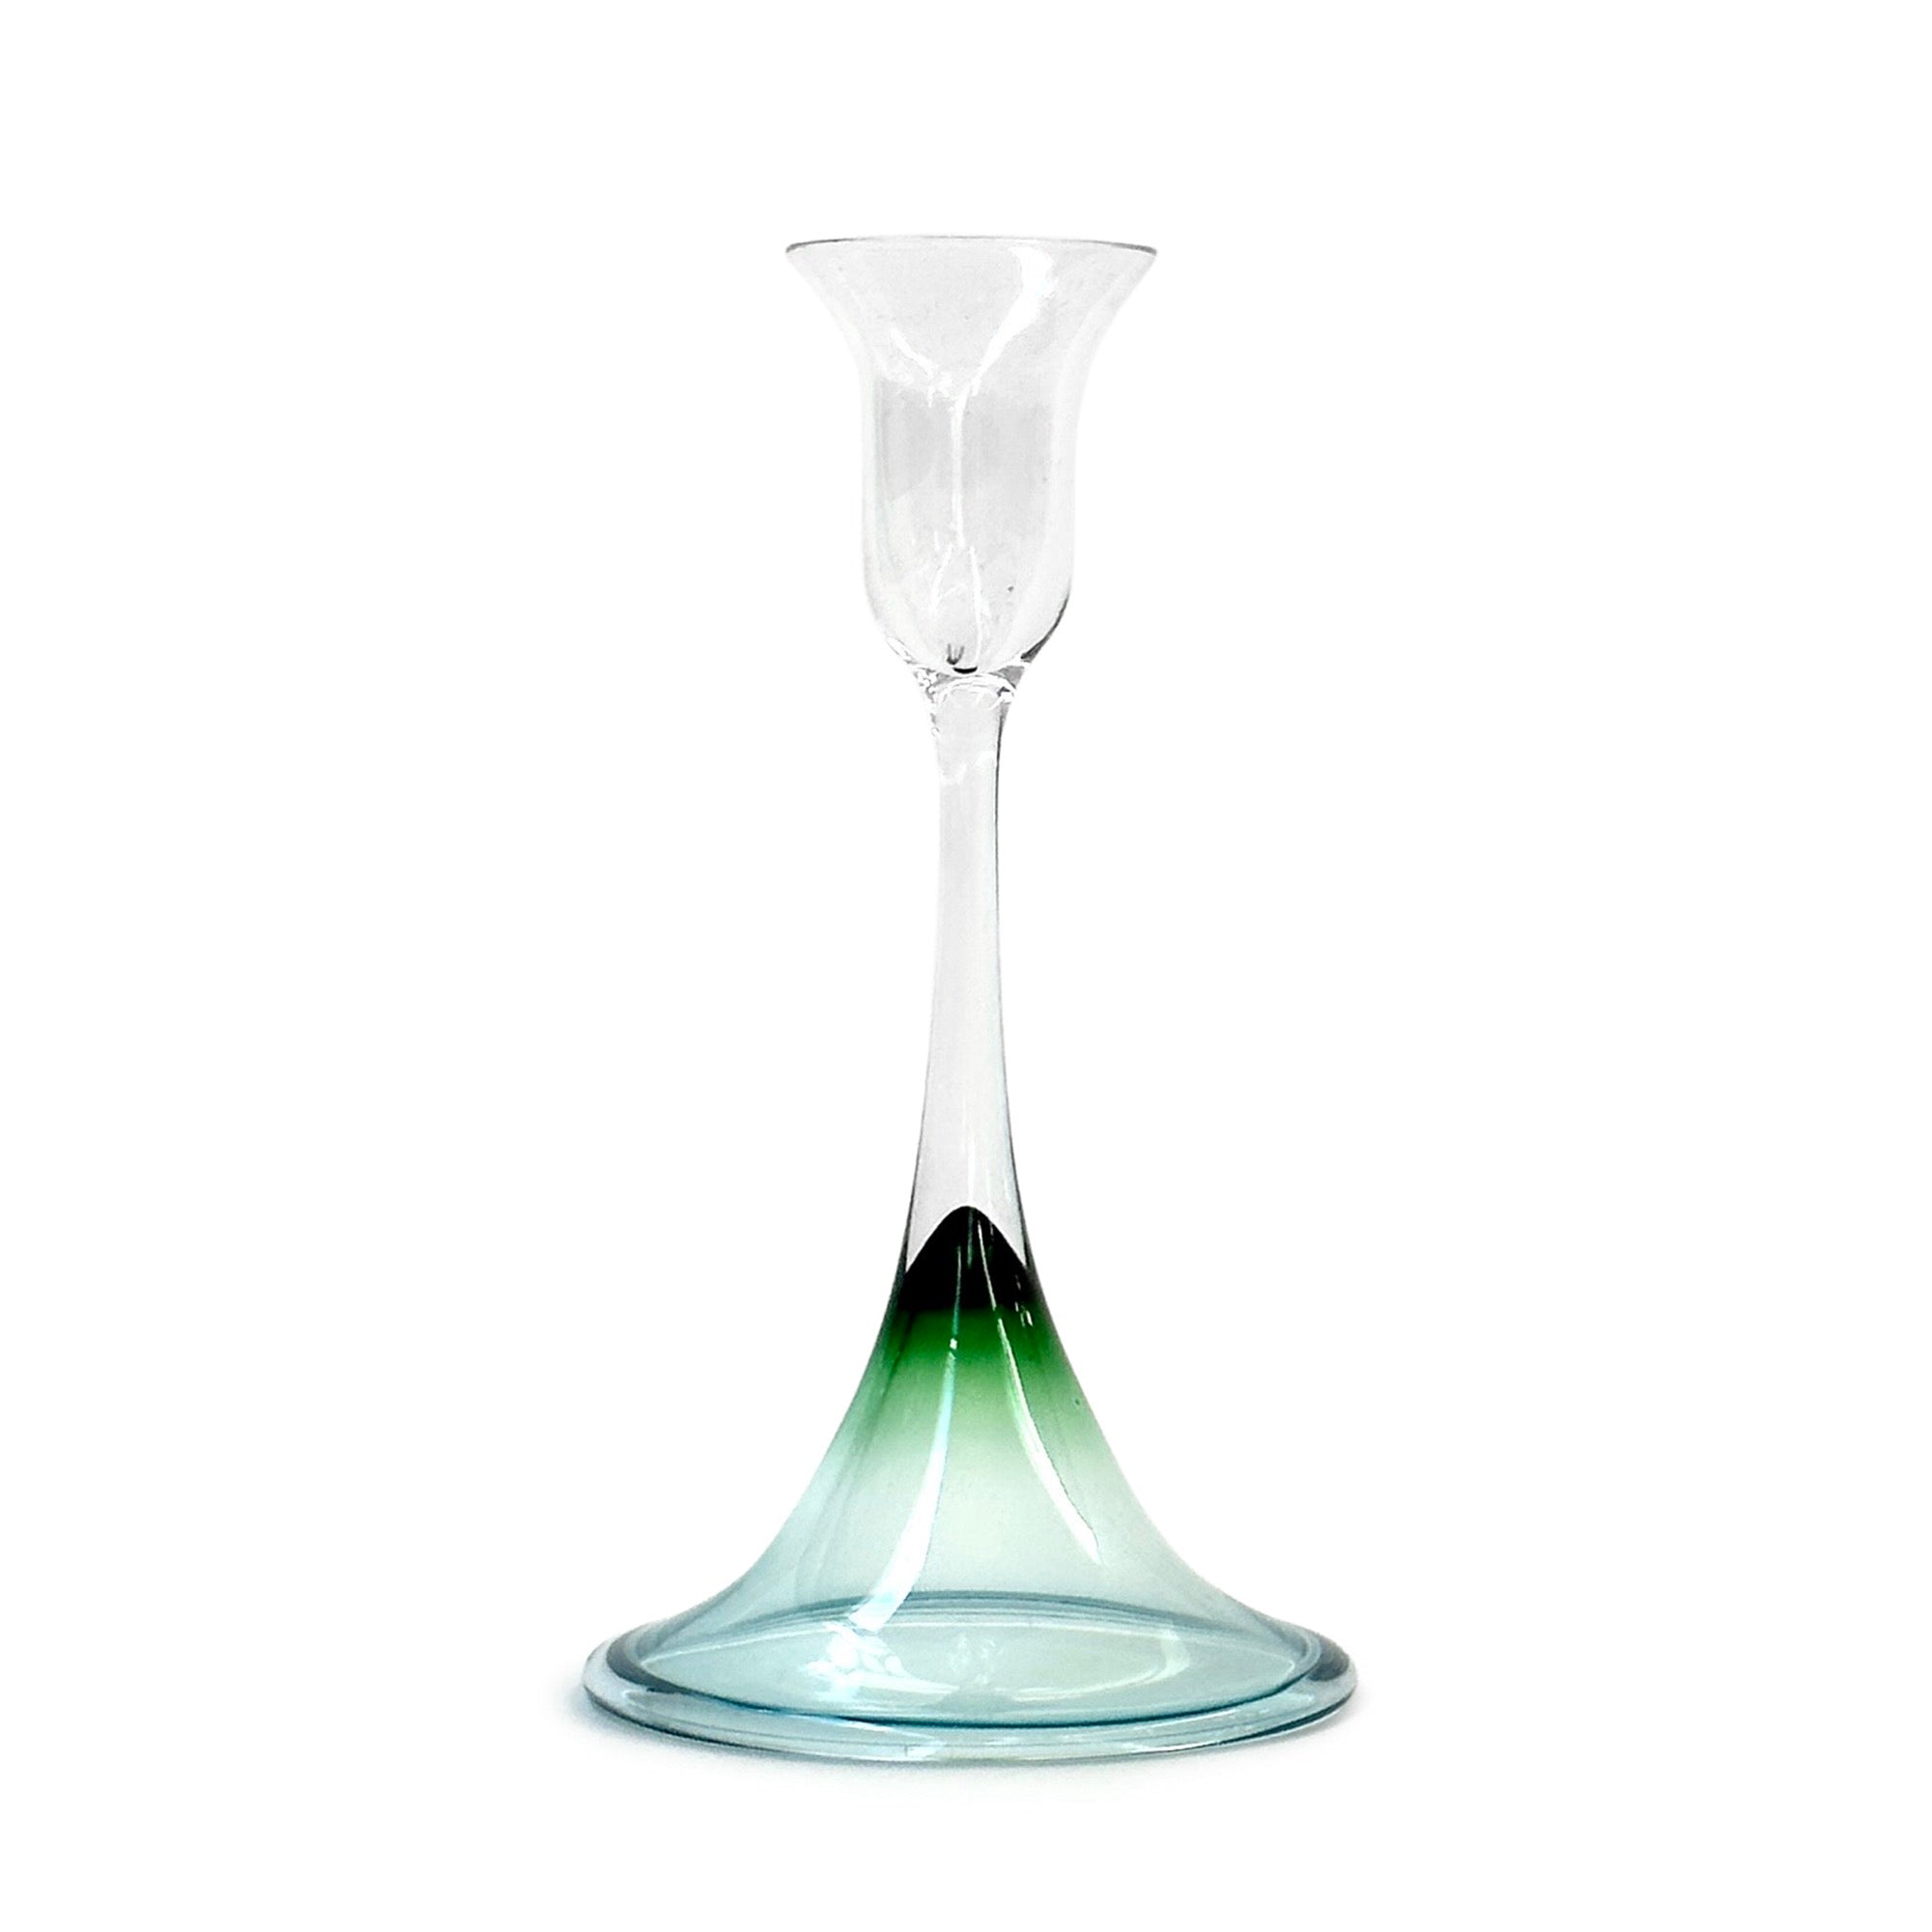 Glass Candleholder by Nils Landberg for Orrefors